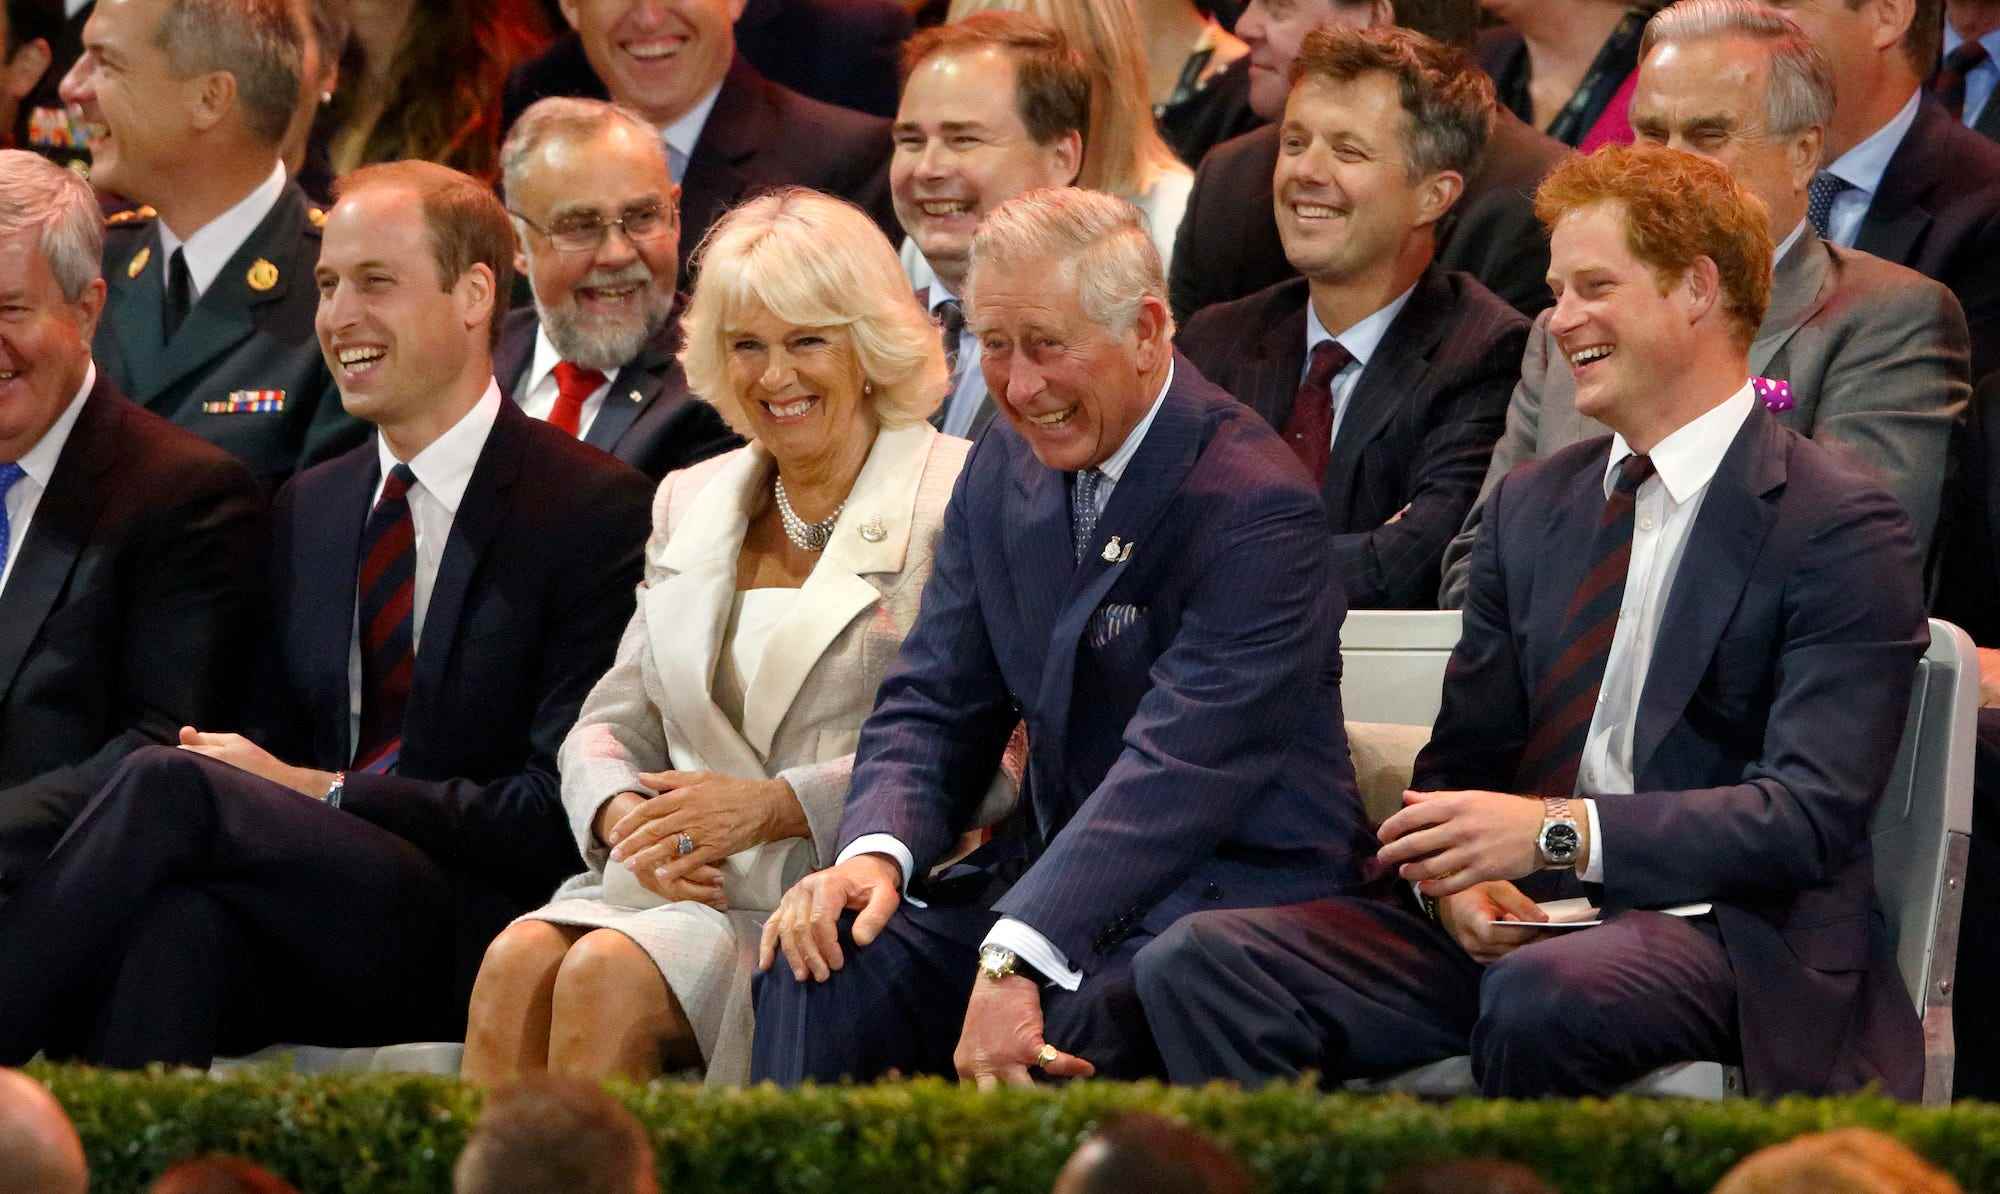 Prinz William, Camilla Parker Bowles, Prinz Charles und Prinz Harry sitzen in einer Menschenmenge.